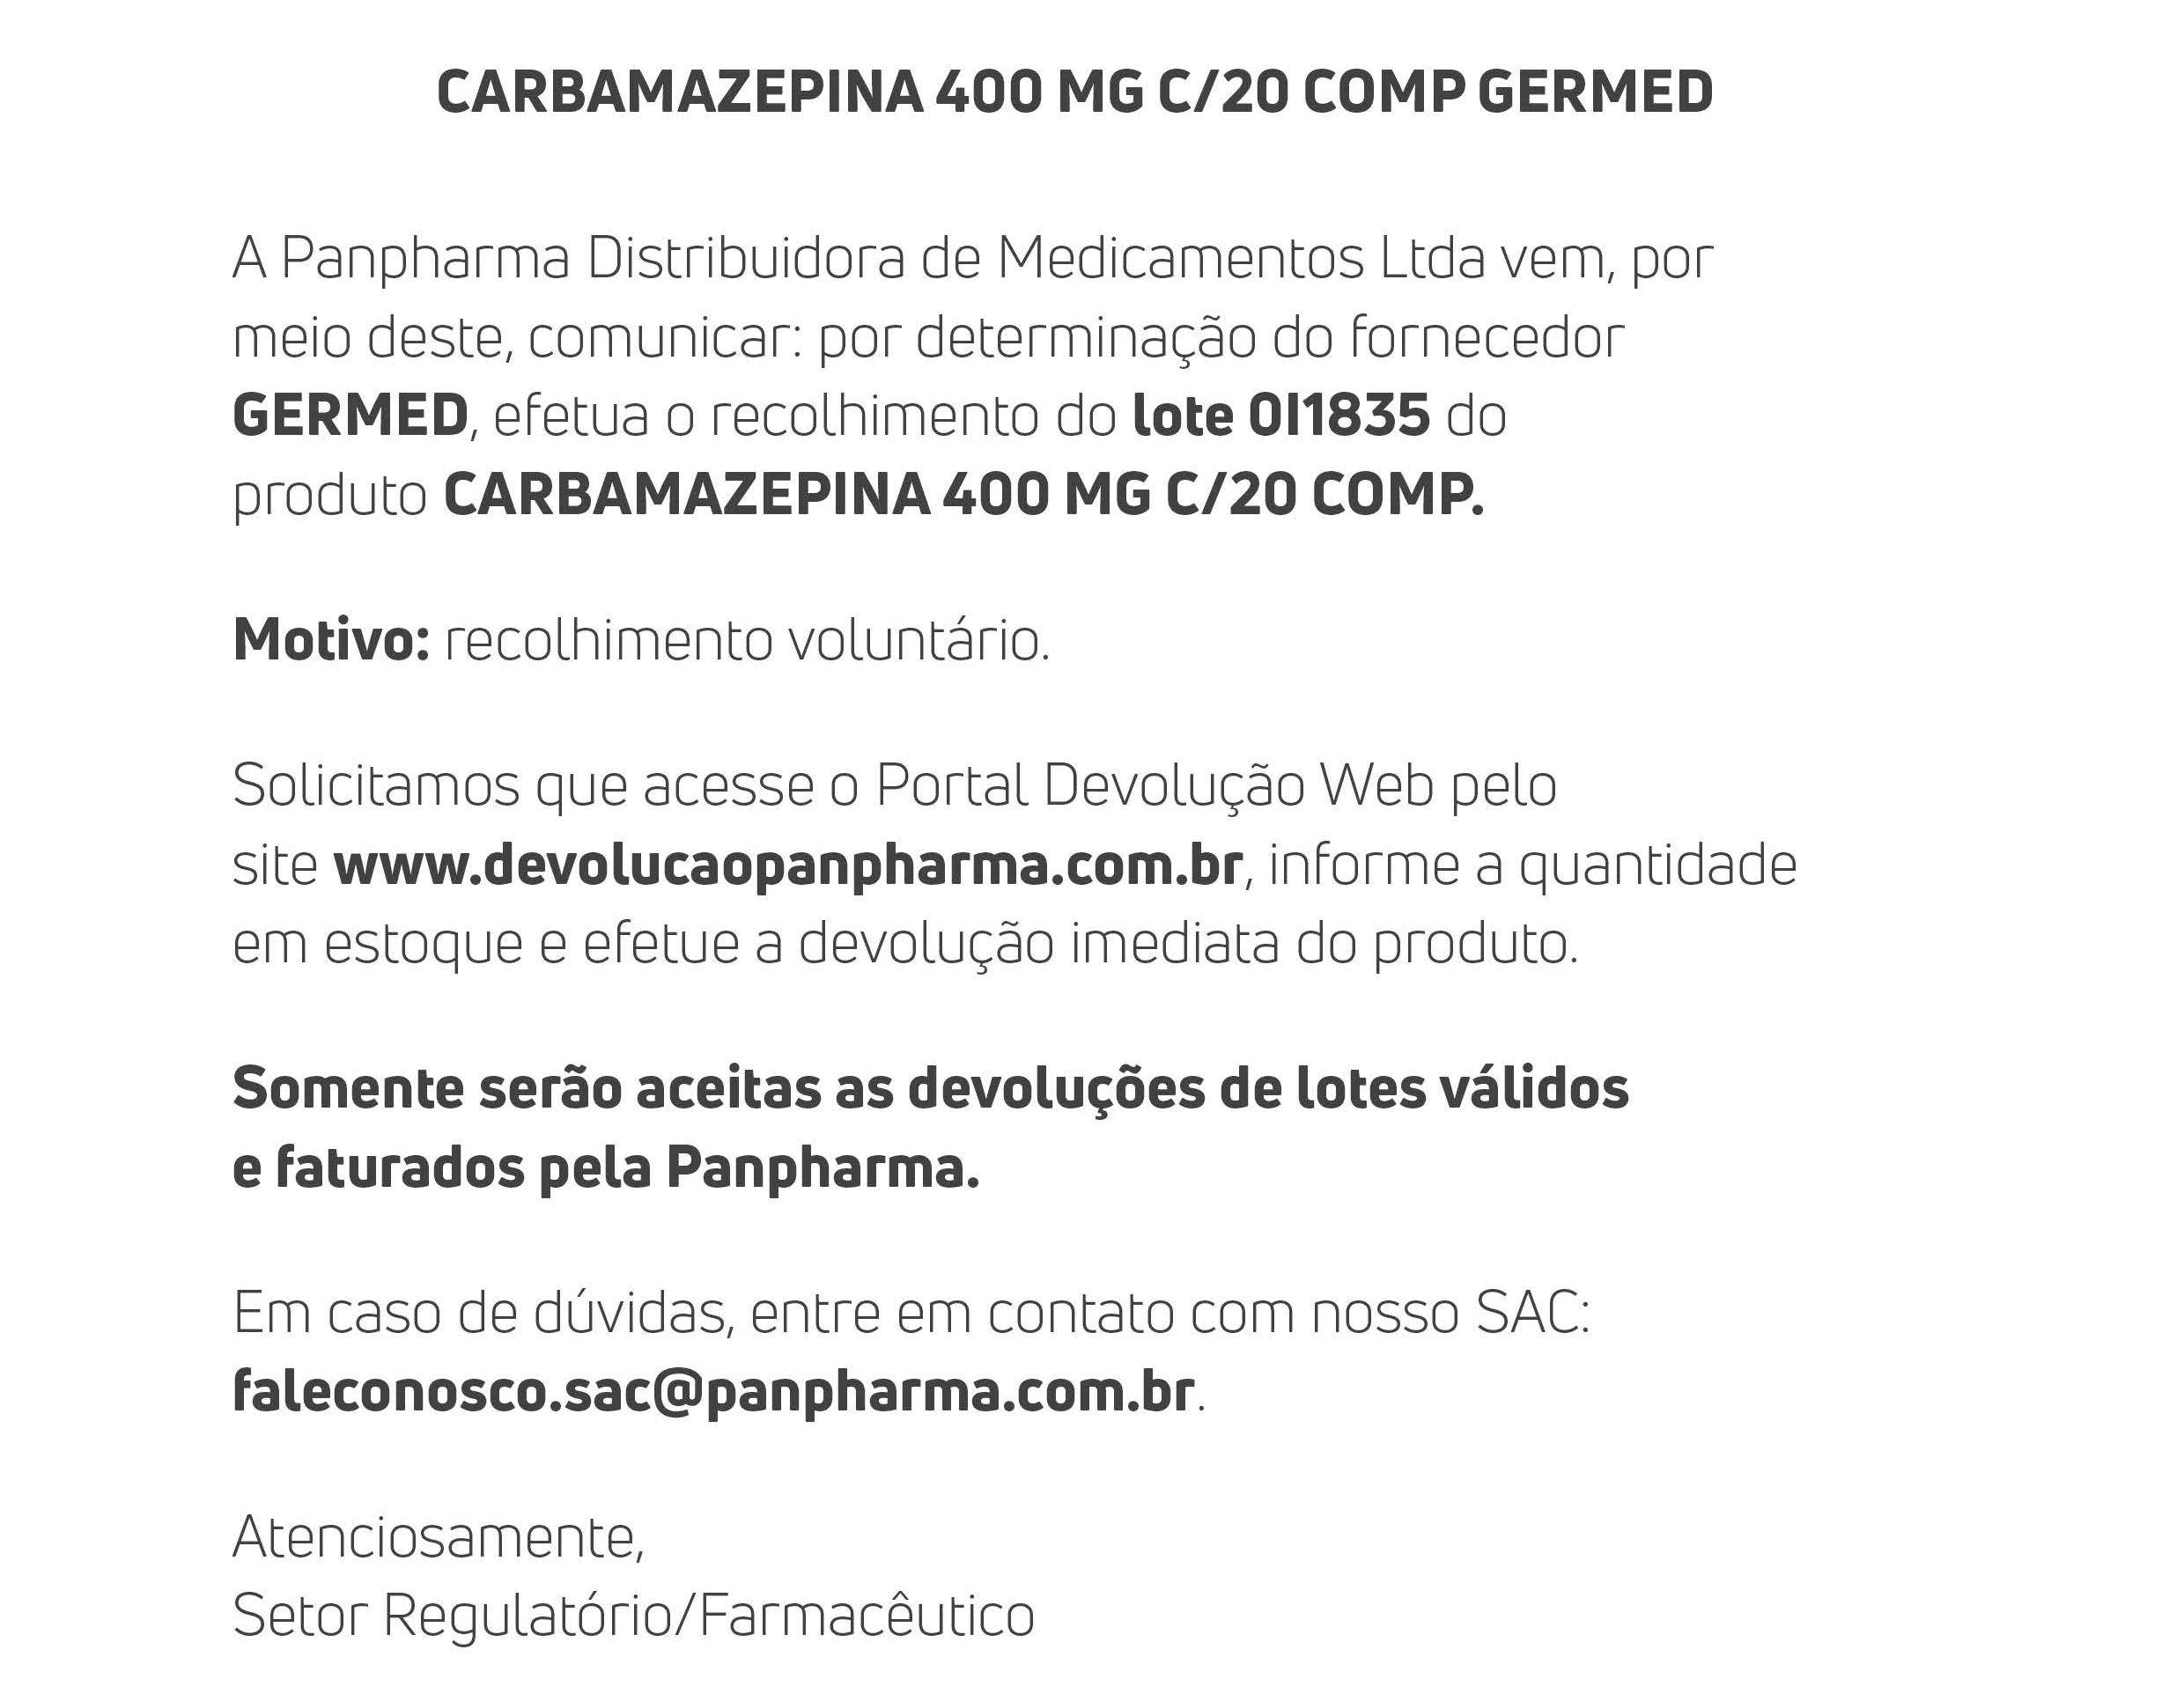 Comunicado_Recall_Carbamazepina_400mg_c20_GERMED